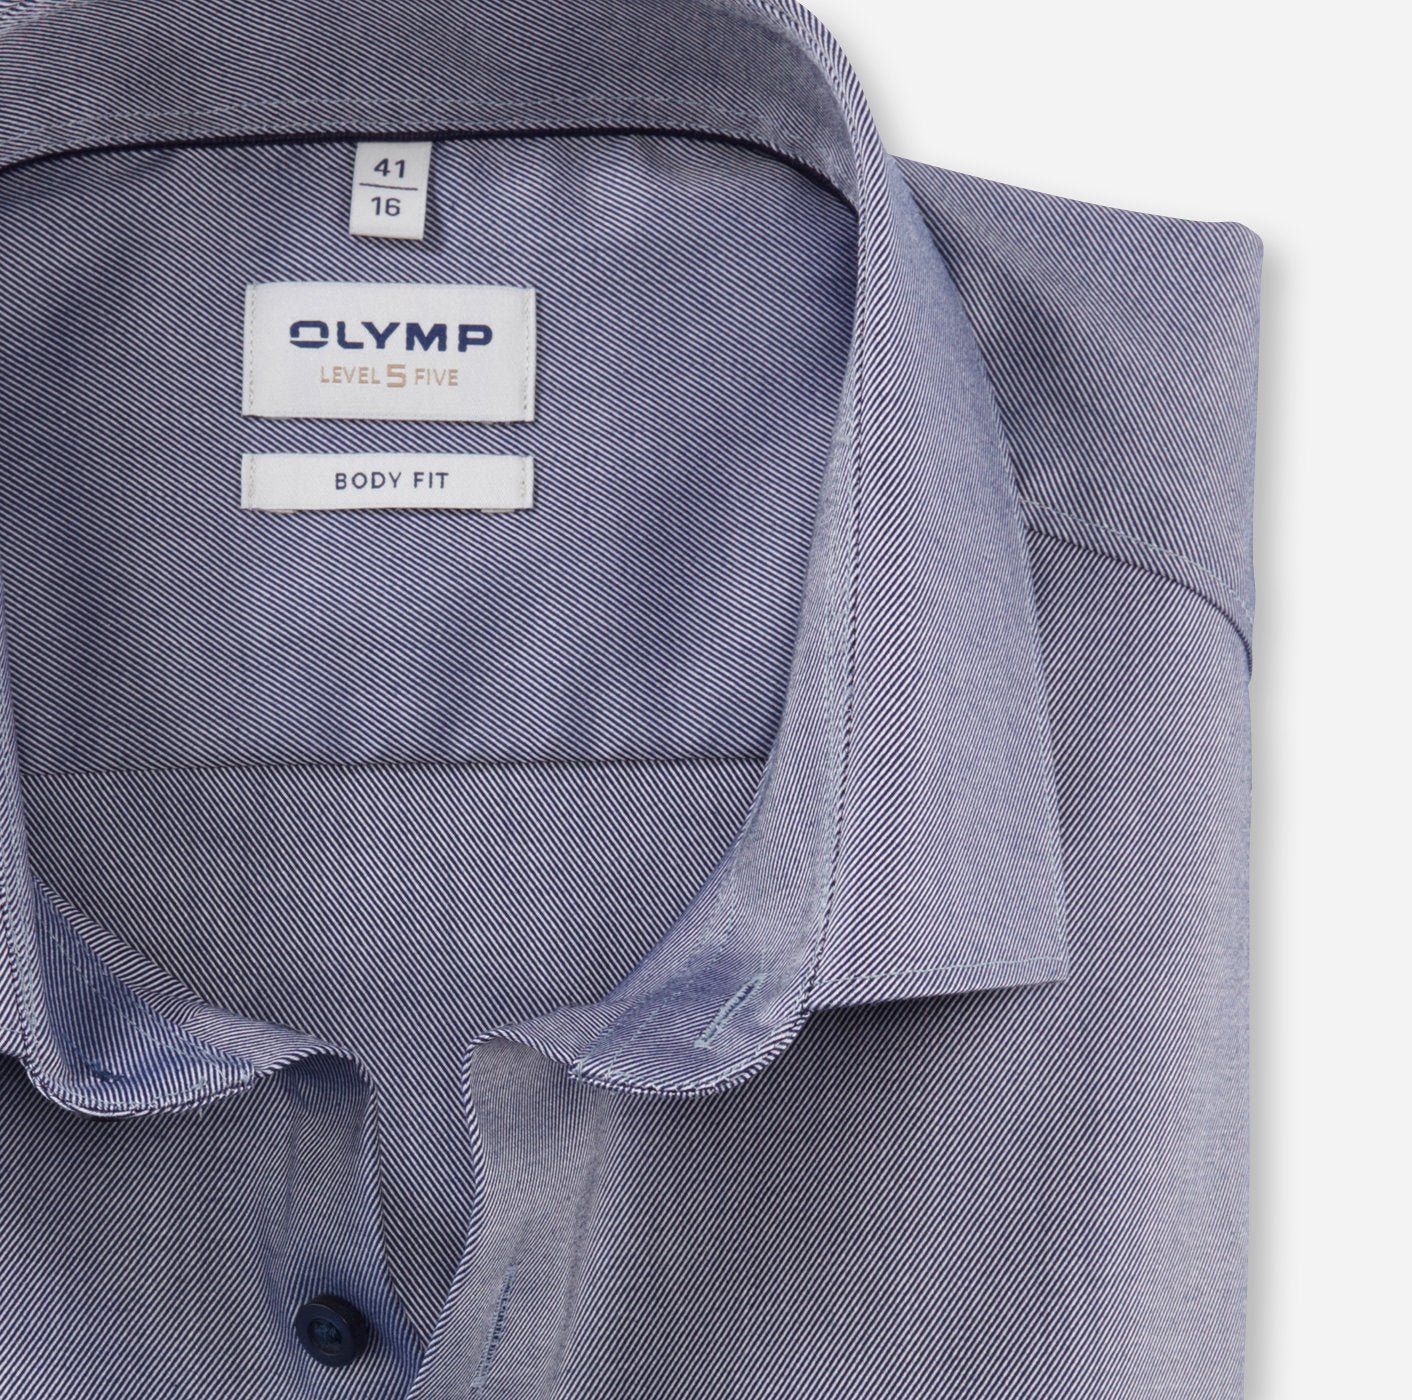 Olymp Level 5 Body Fit Formal Shirt - Matt O'Brien Fashions